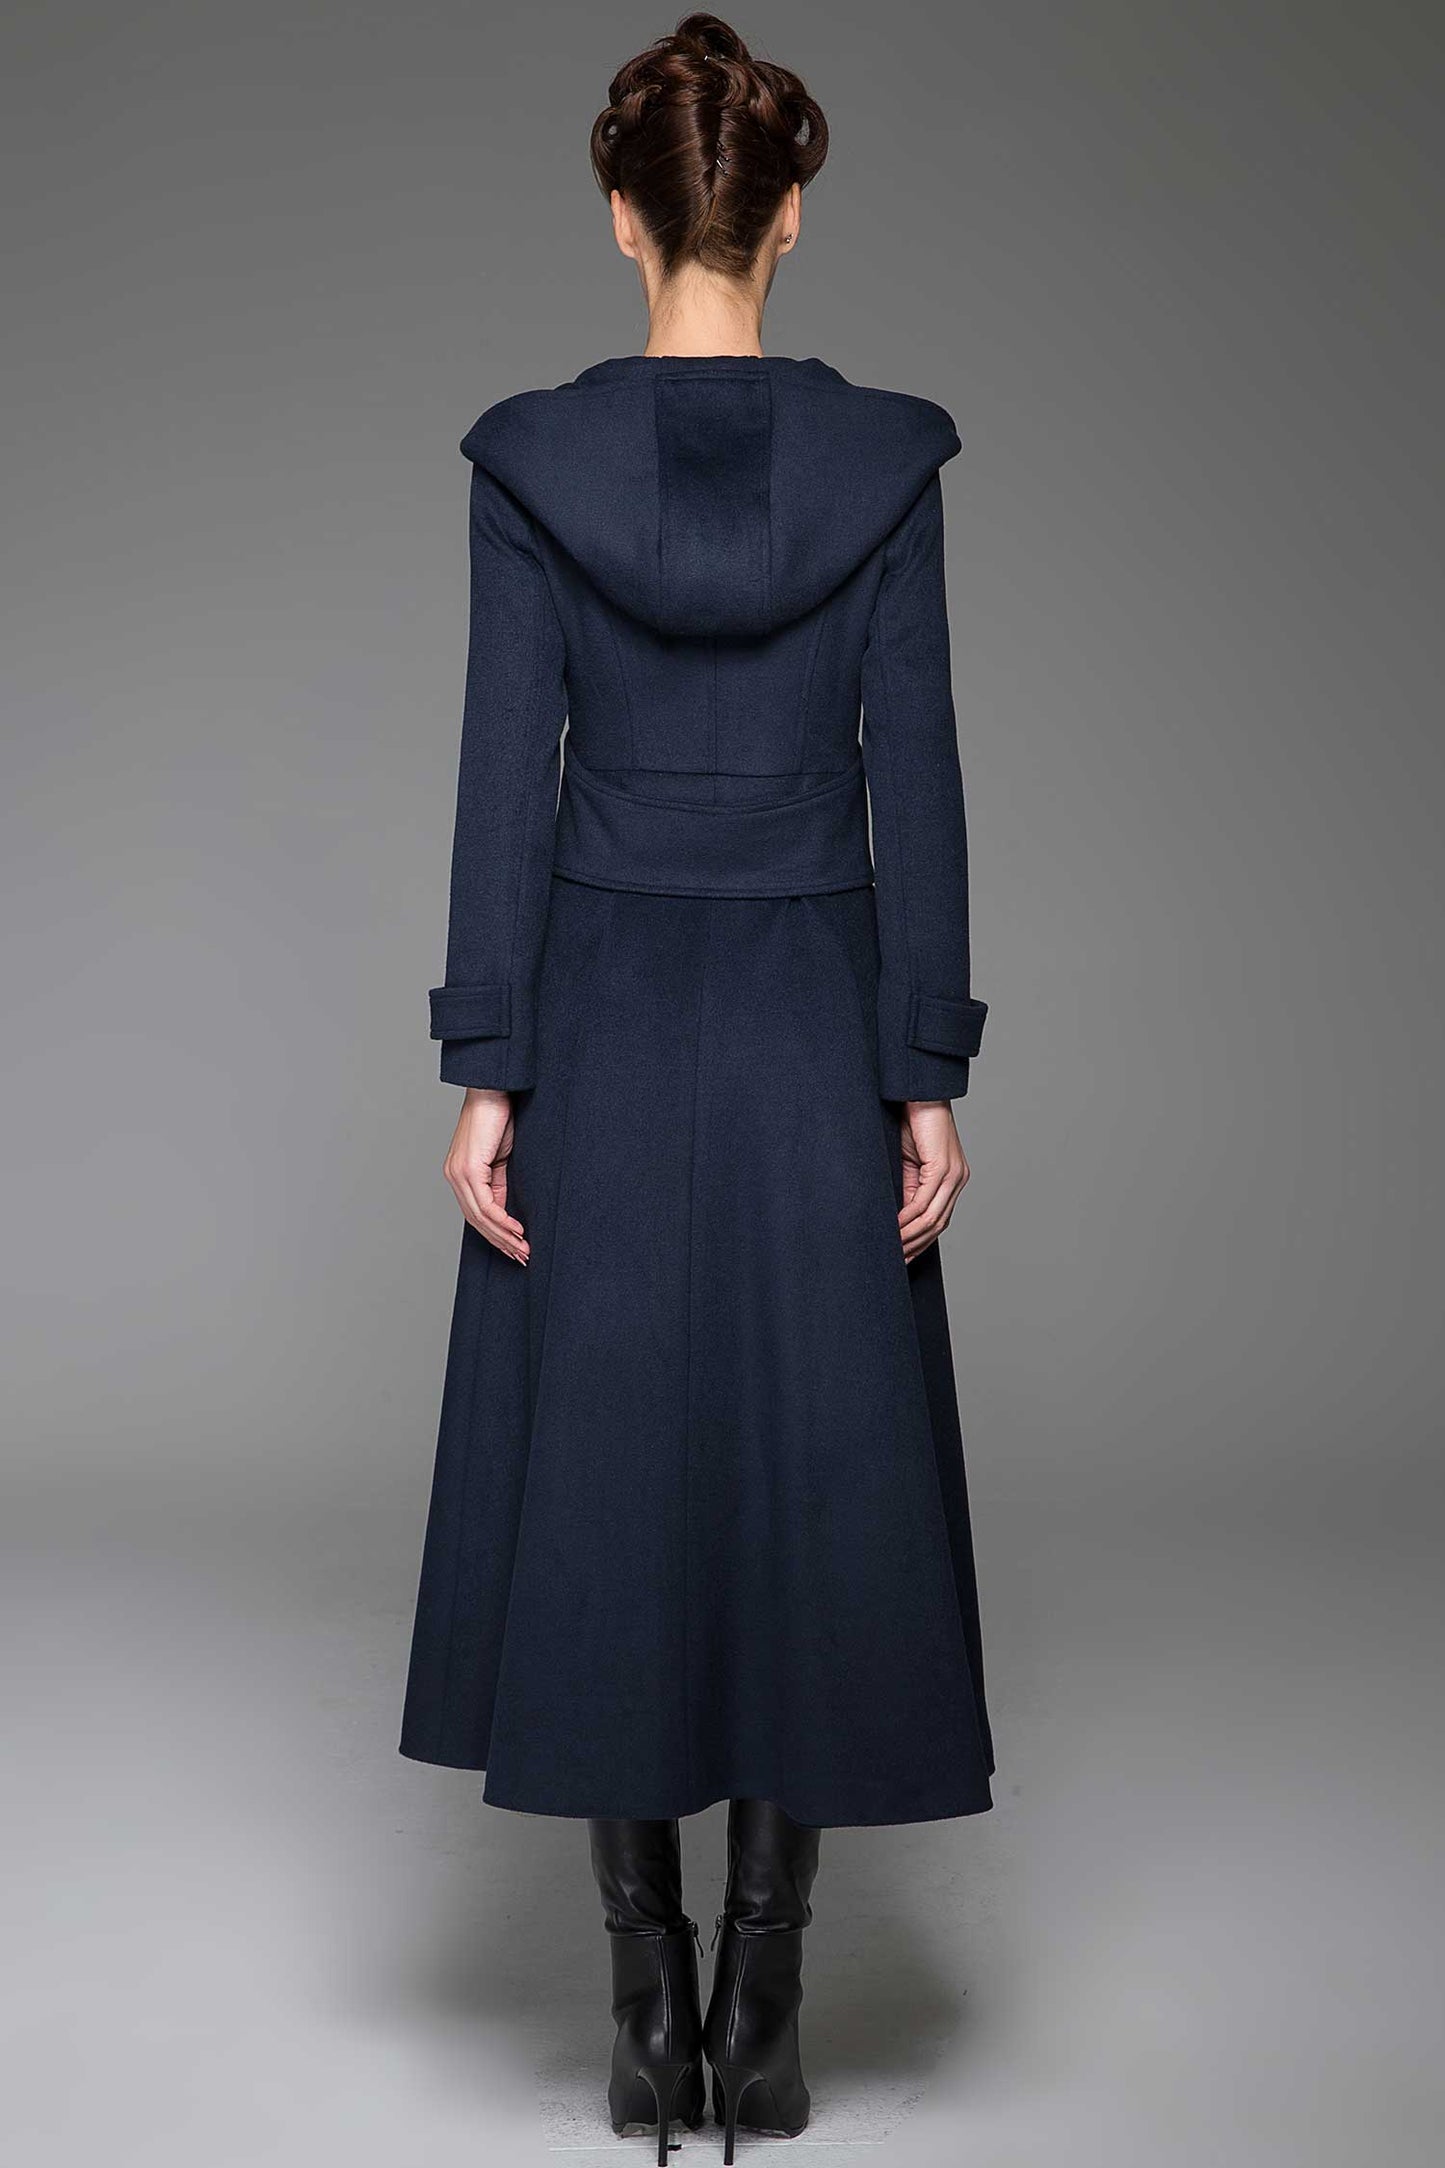 handmade hooded long wool coat in navy blue 1420#